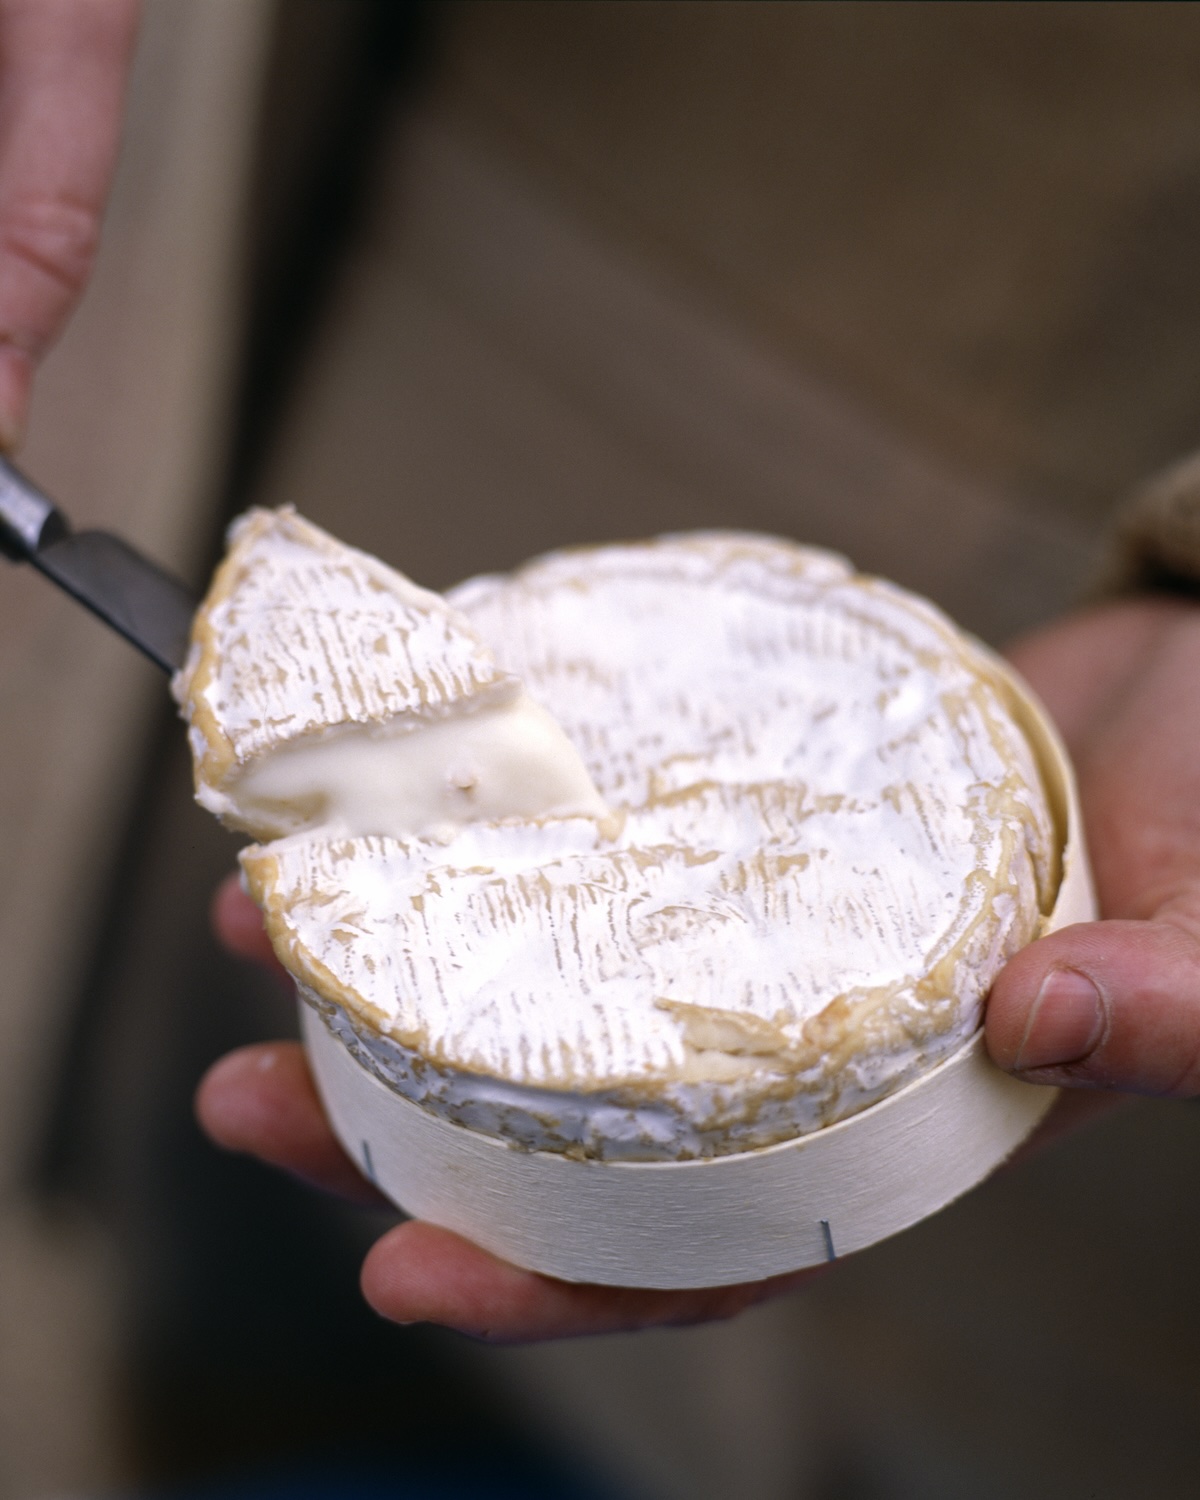 Le camembert - En savoir plus sur le camembert, origines et utilisation en  cuisine